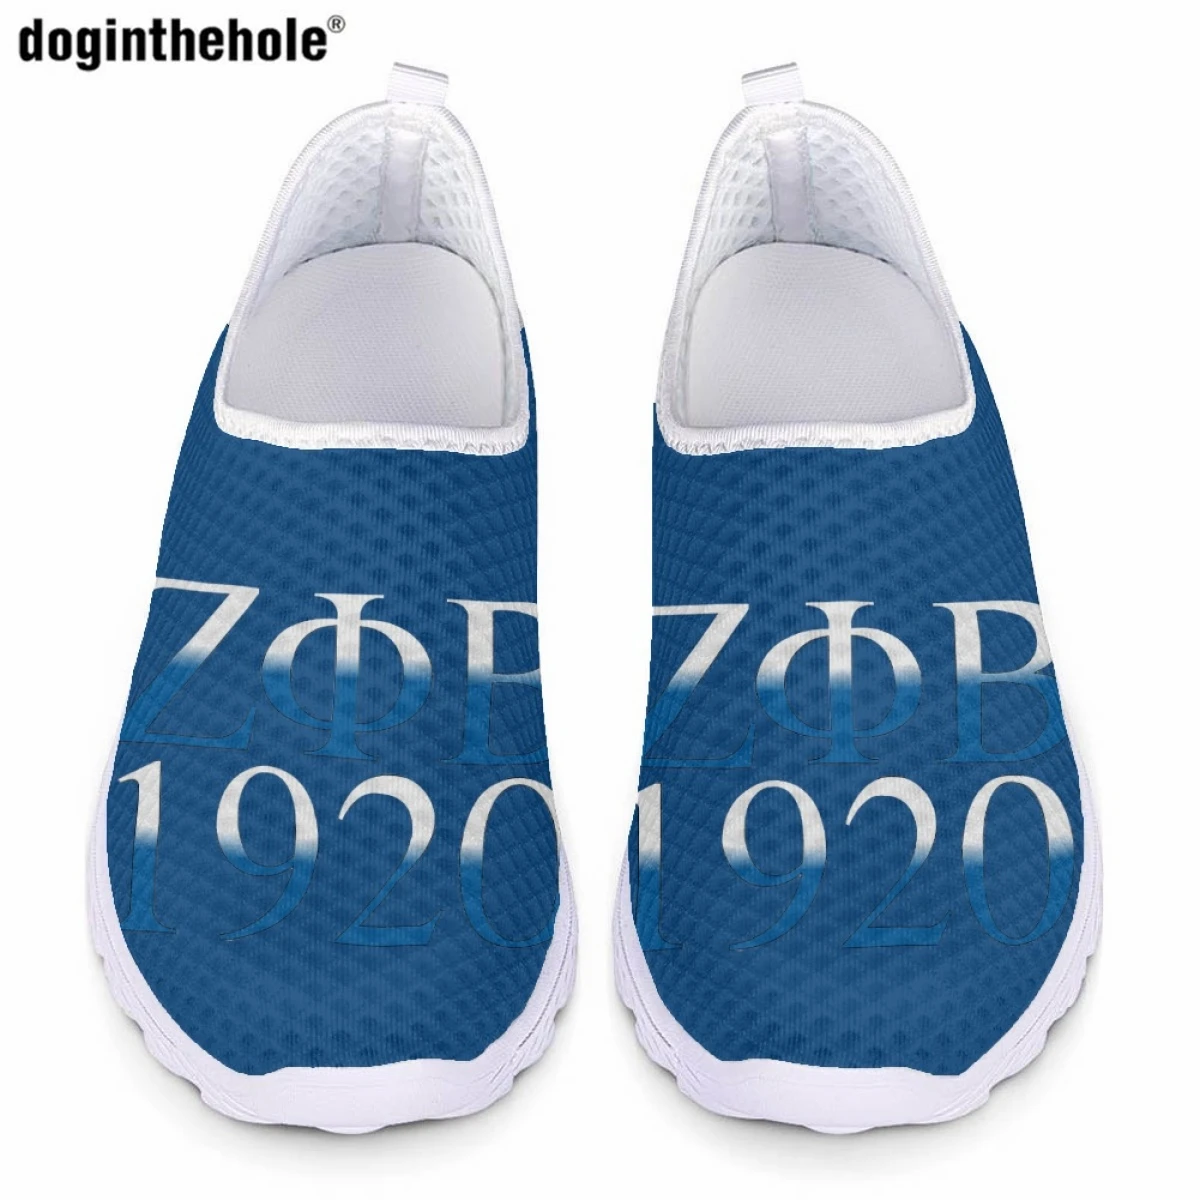 

Летняя повседневная обувь Doginthehole Zeta Phi Beta Sorority для женщин, модные новые кроссовки на плоской подошве, дышащая сетчатая обувь для кормления